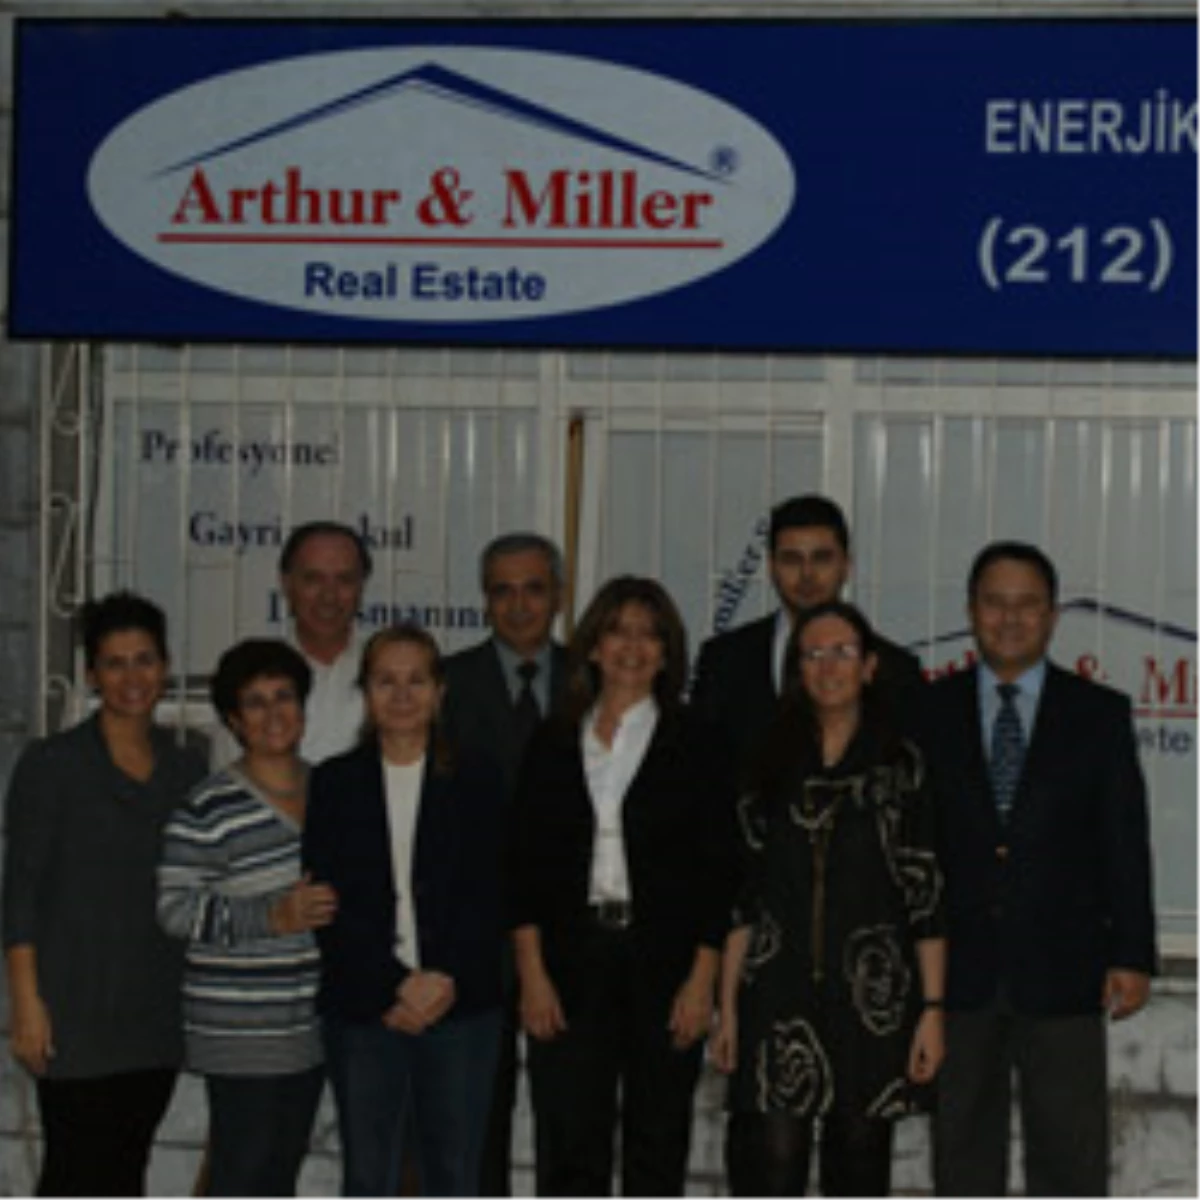 Arthur&Miller Real Estate’in Nişantaşı Ofisi Hizmete Açıldı!
 
